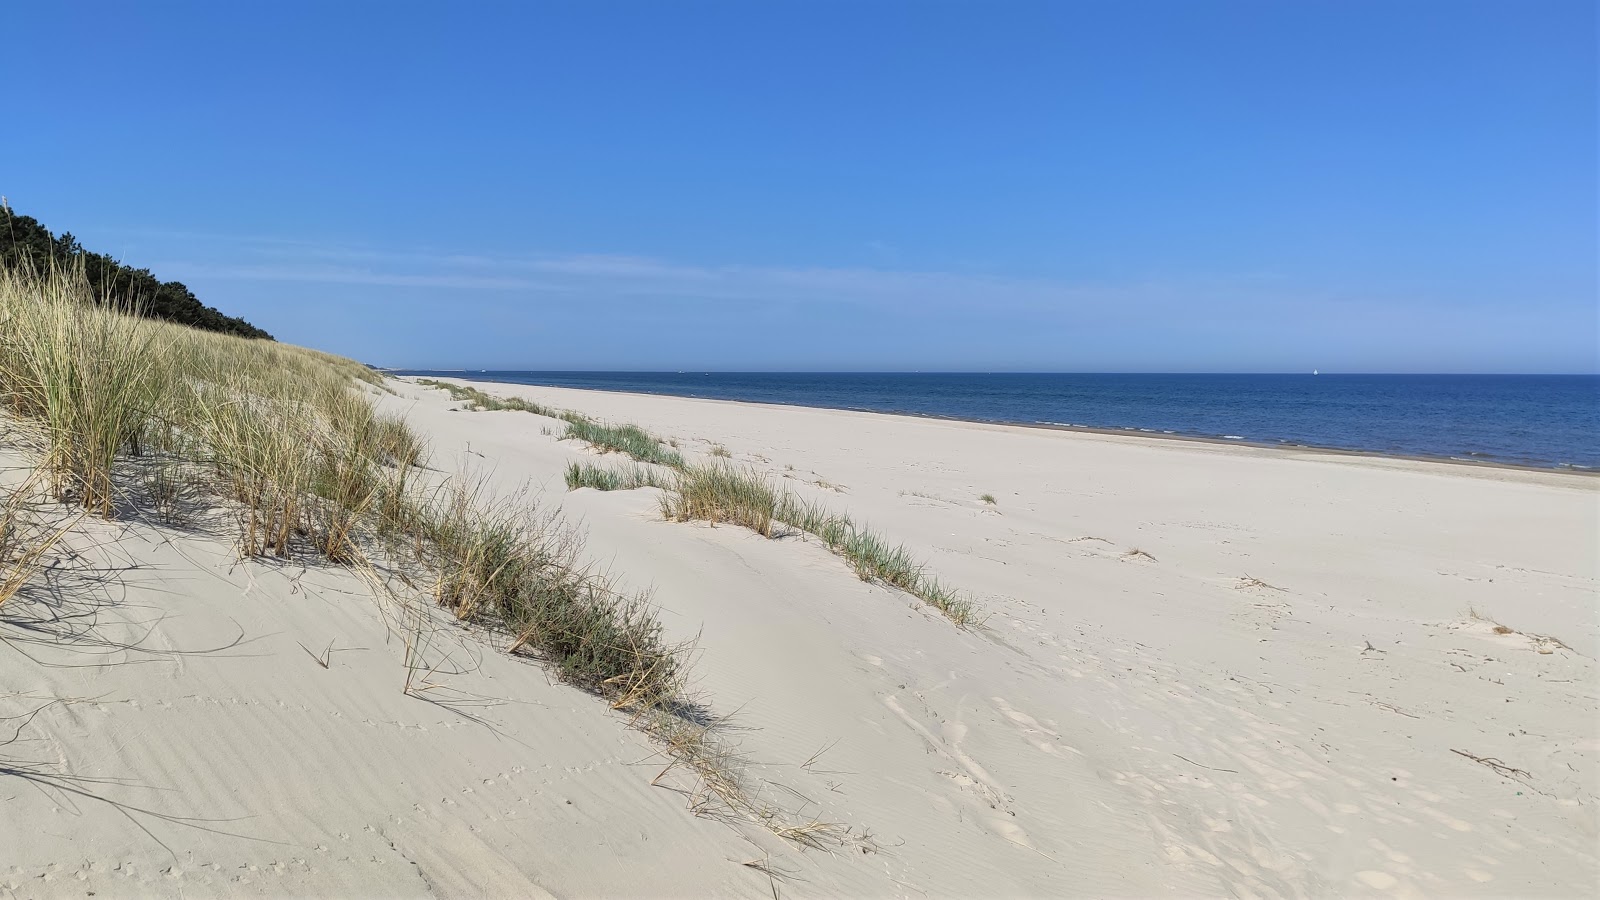 Foto de Mierzeja Sarbska beach com areia brilhante superfície